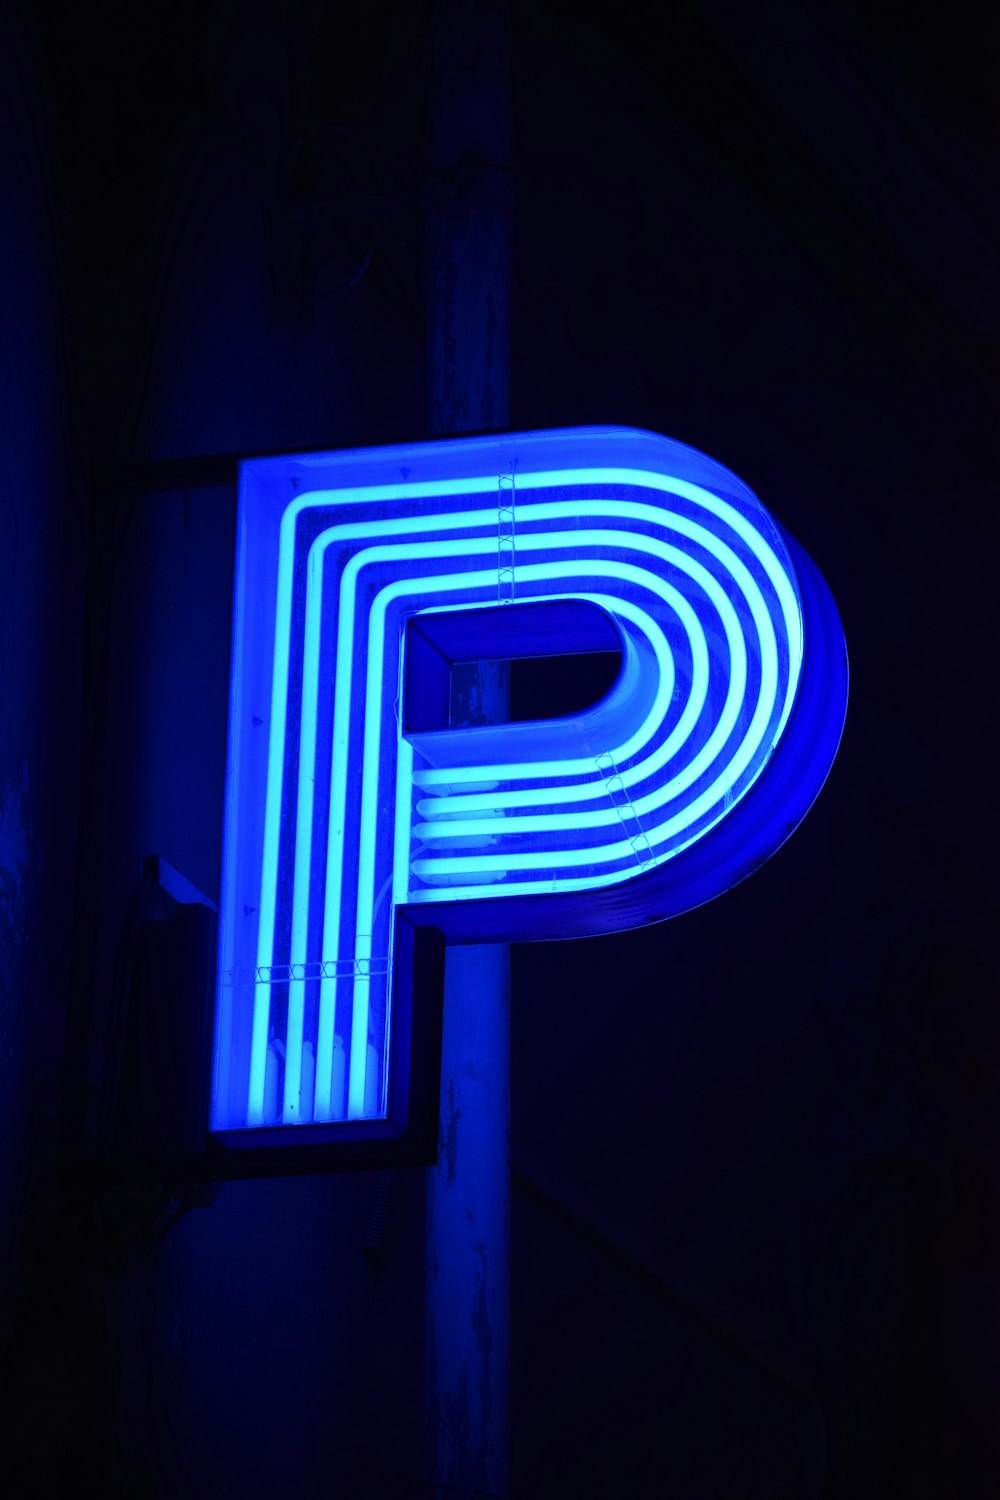 Blau-weiße Buchstaben-P-Neonlichtbeschilderung